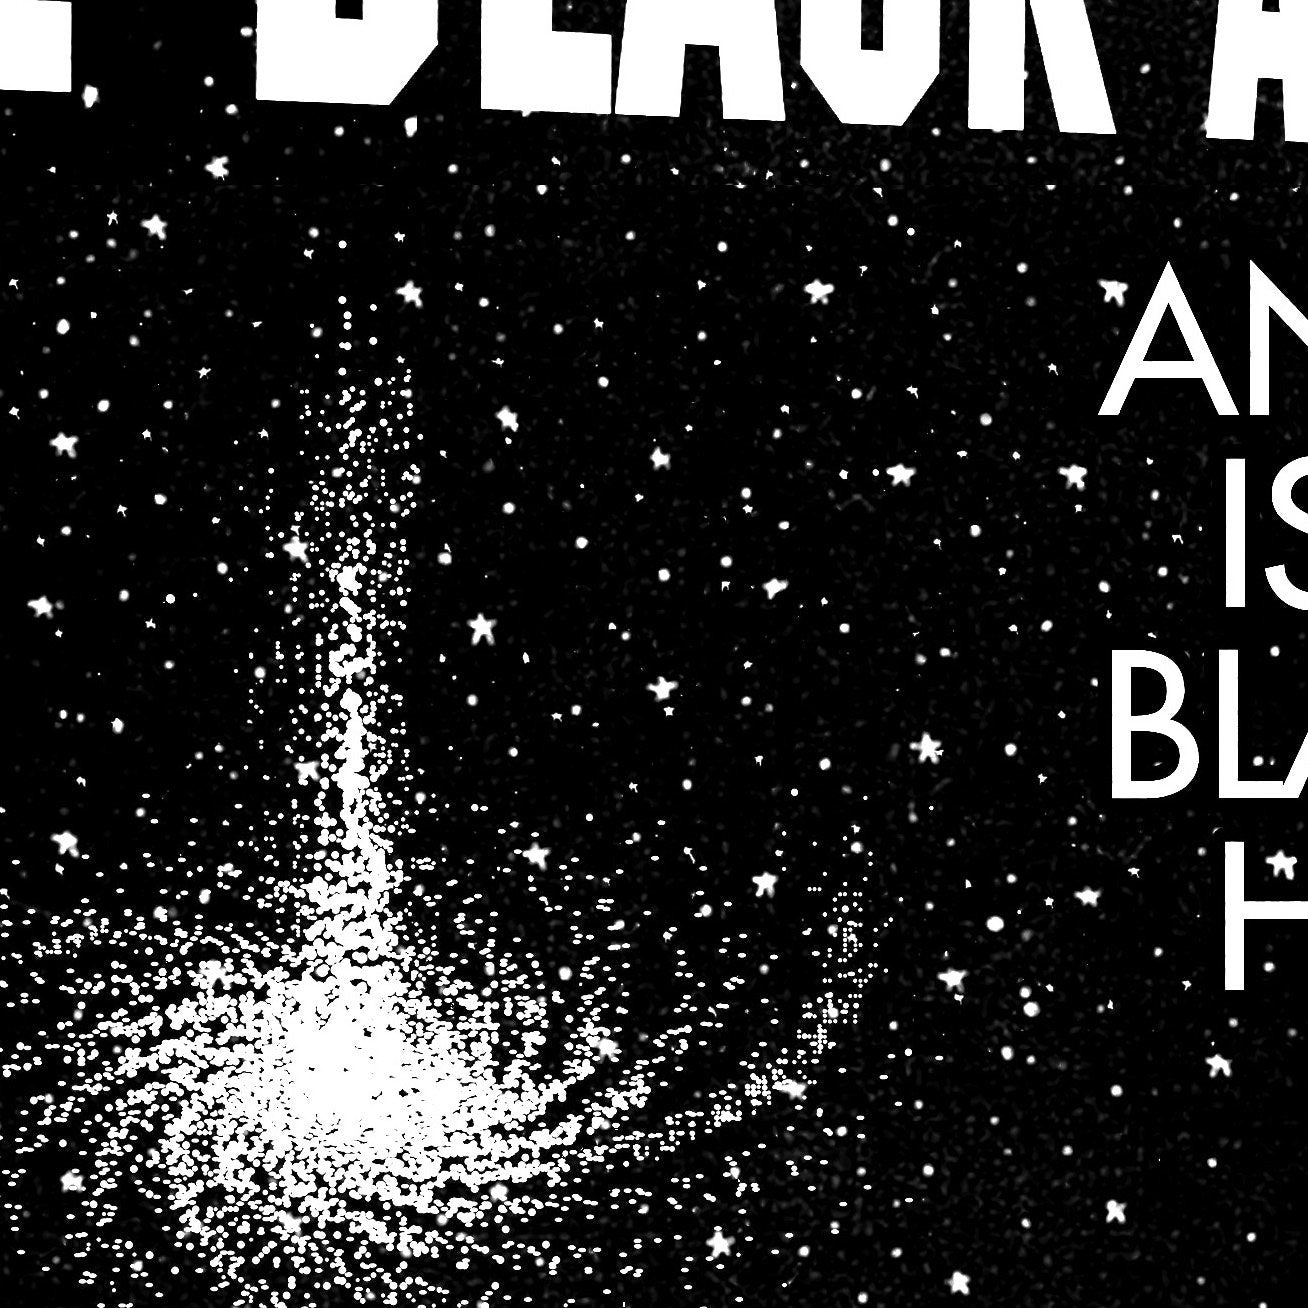 Blue Oyster Cult, Heavy Metal lyrics typography | 11x17 Art Print